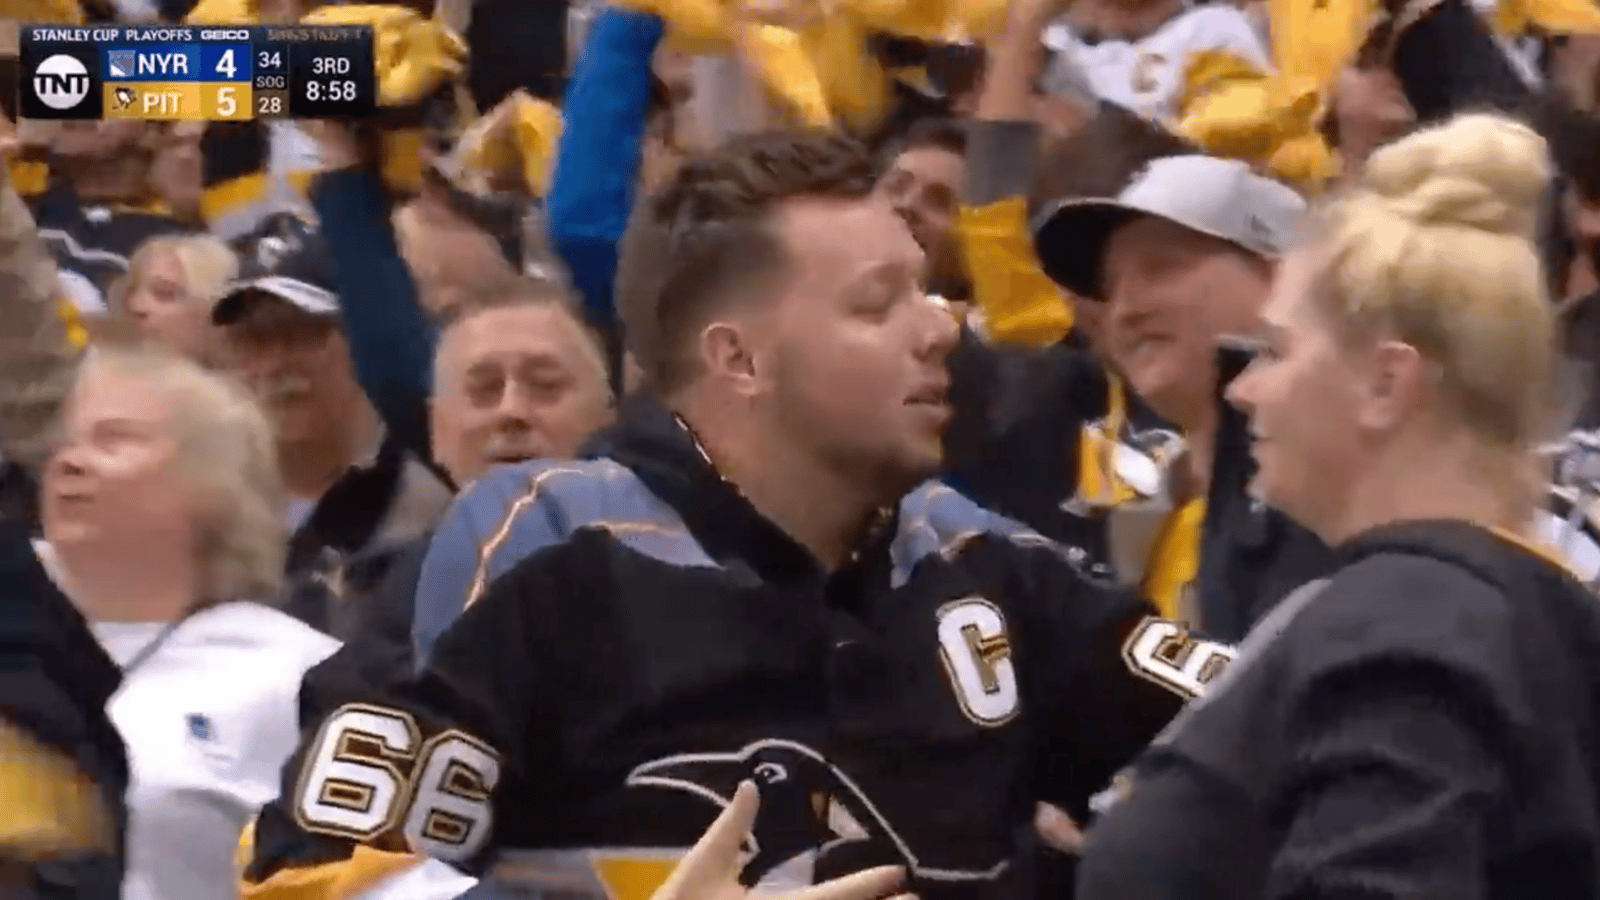 Un fan des Penguins, qui se fait “friendzone” sur un moyen temps au match des Penguins, fait exploser internet 